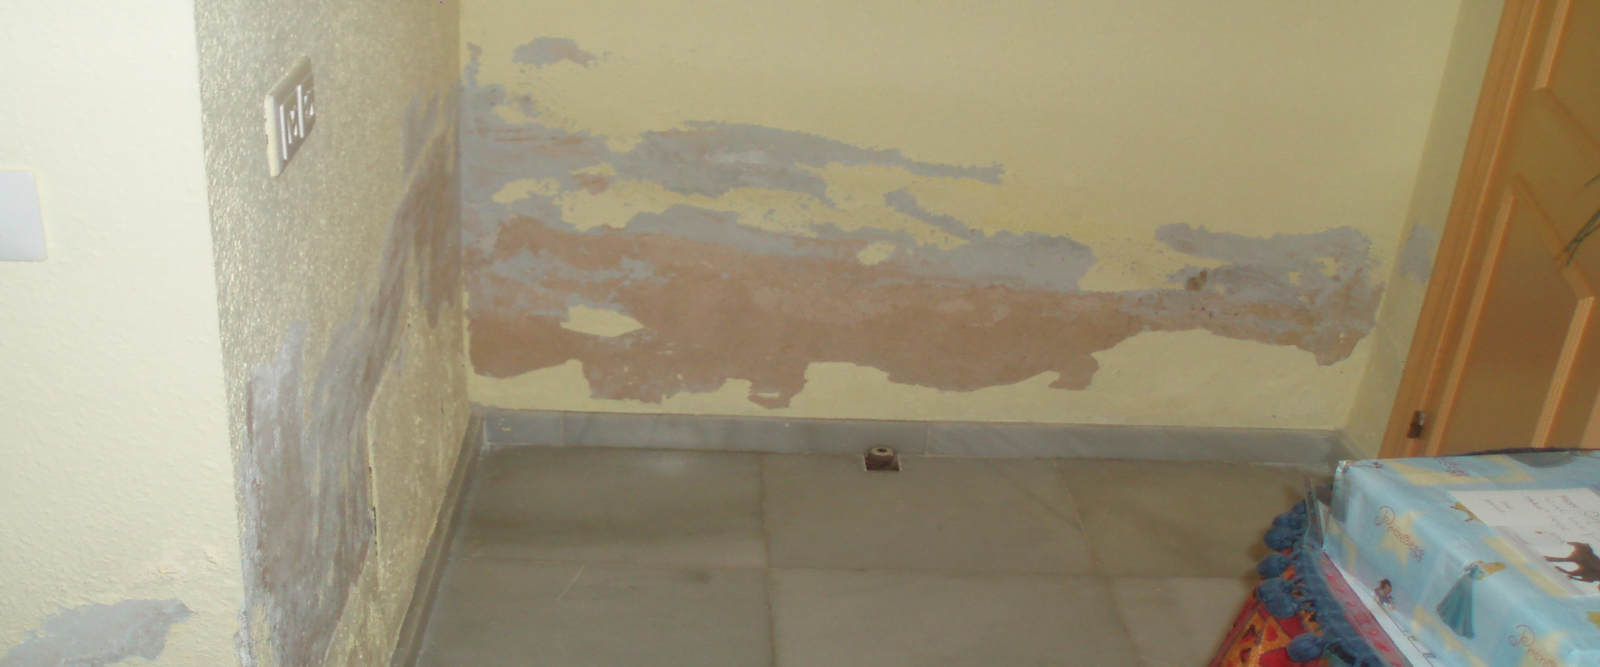 Quitar las humedades en paredes y el moho. Capilaridad y mohos